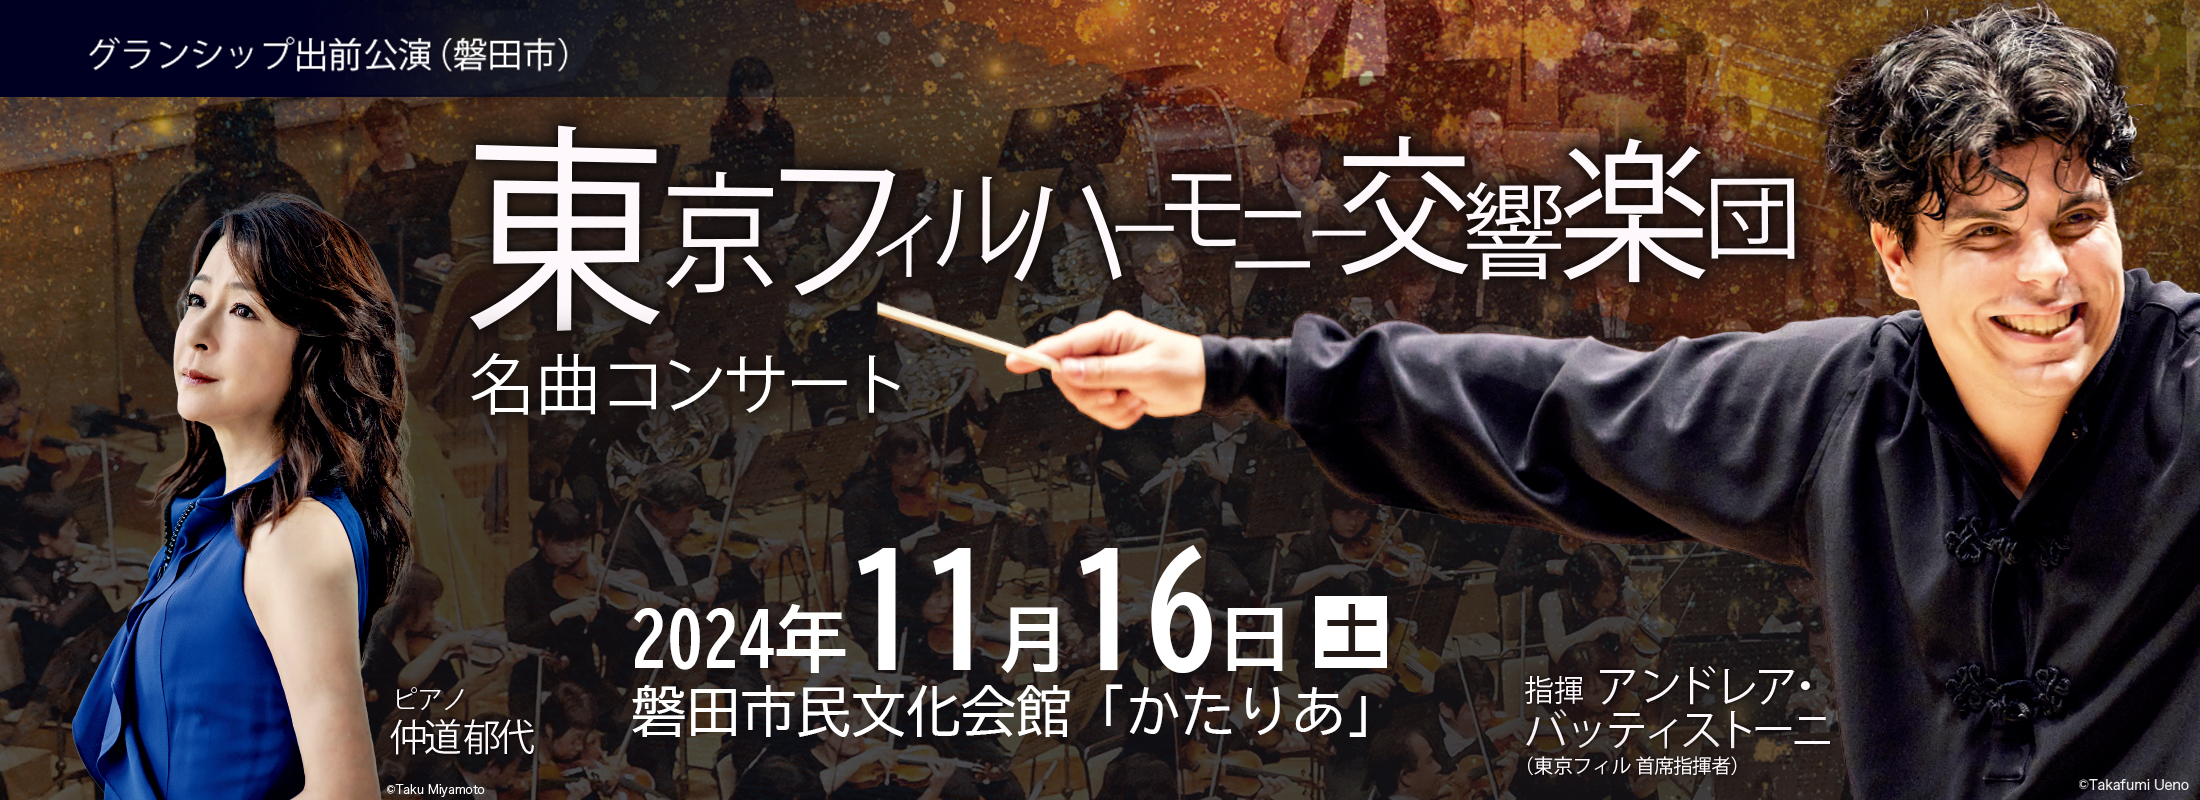 【グランシップ出前公演】東京フィルハーモニー交響楽団名曲コンサート